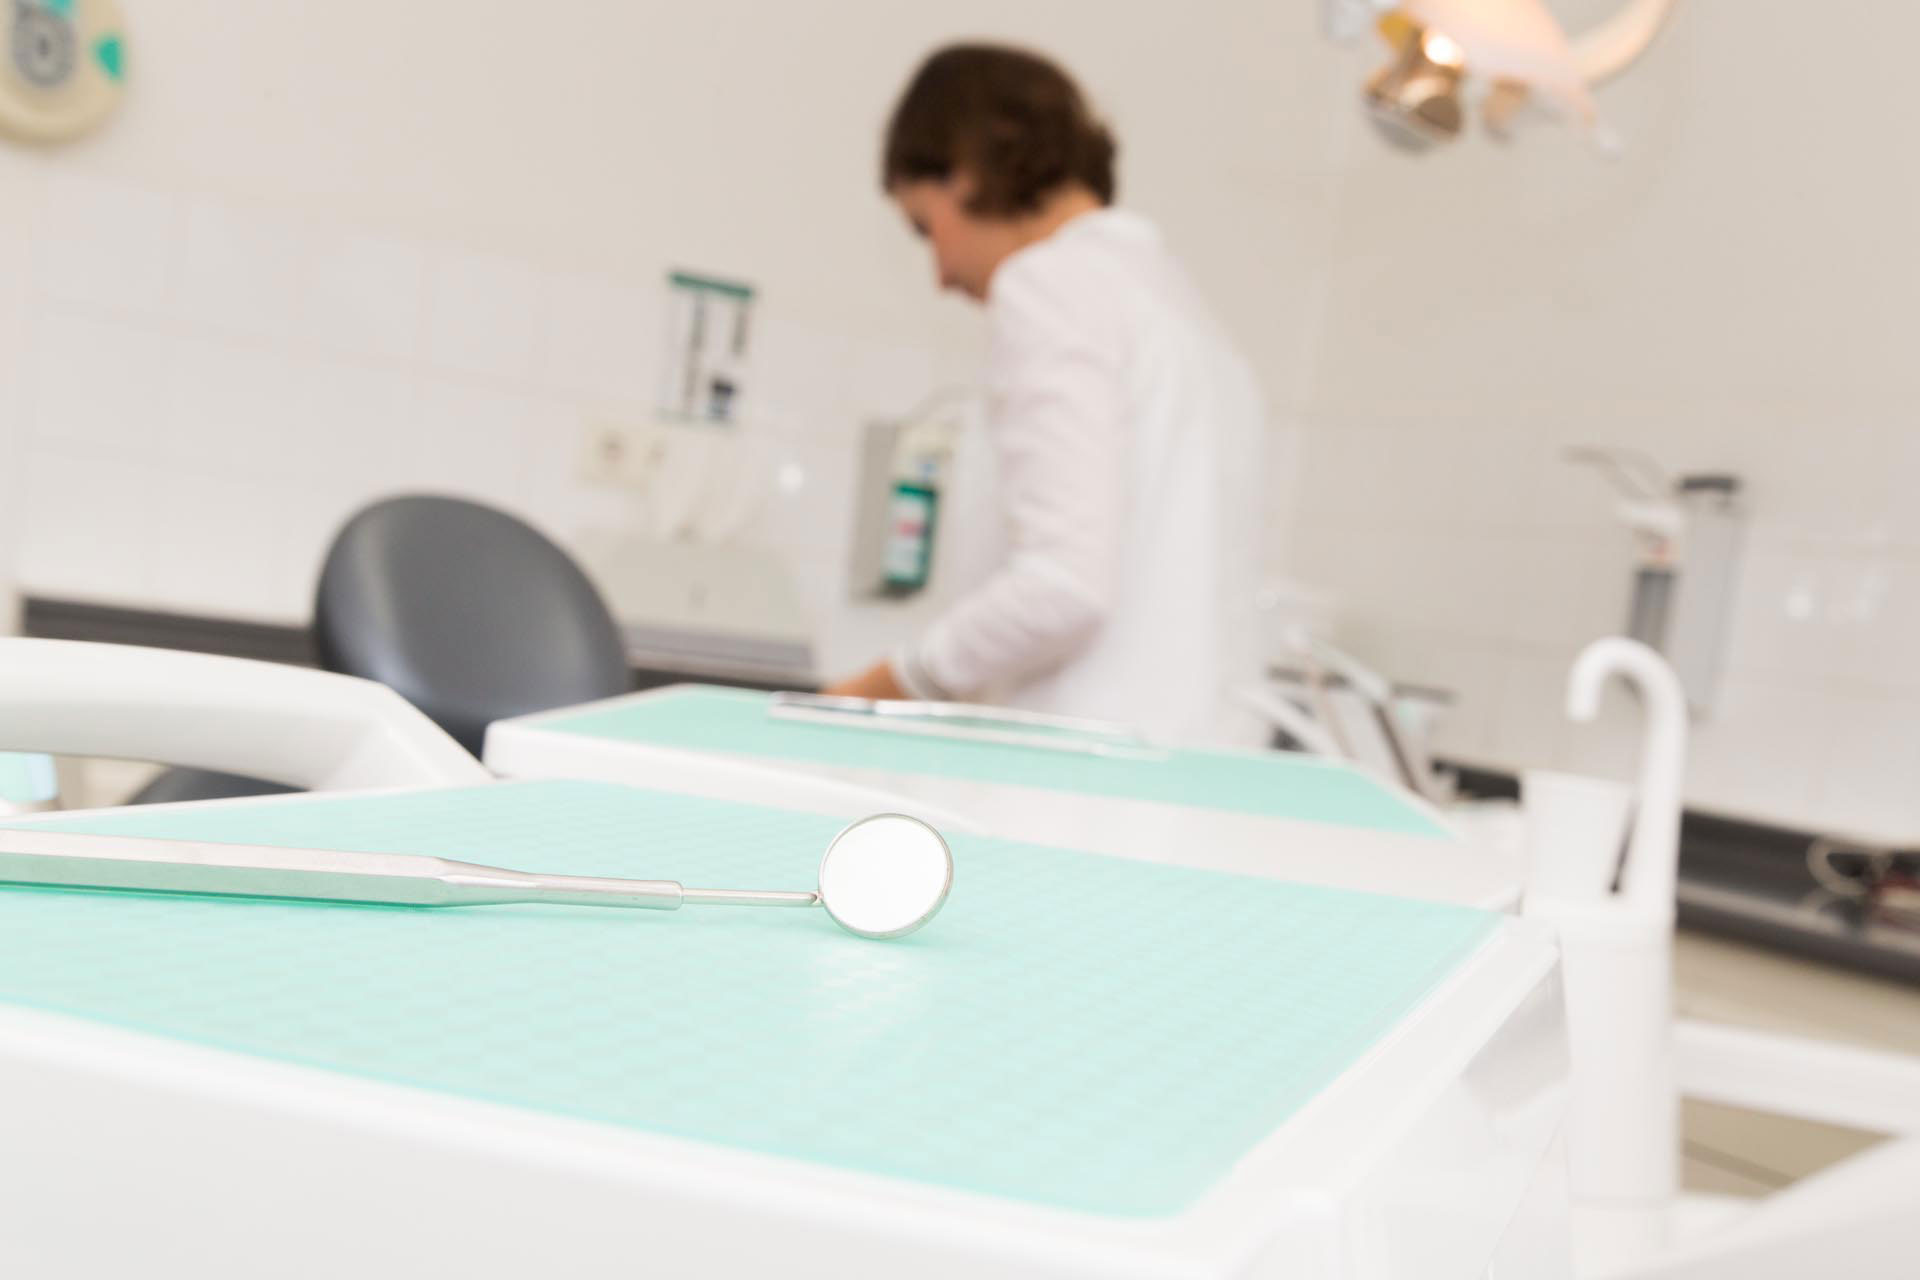 Zahnarztspiegel im Fokus auf einer Ablage für zahnärztliche Instrumente in einem Praxisraum, mit Frau Dr. Sarah Herrmann unscharf im Hintergrund.